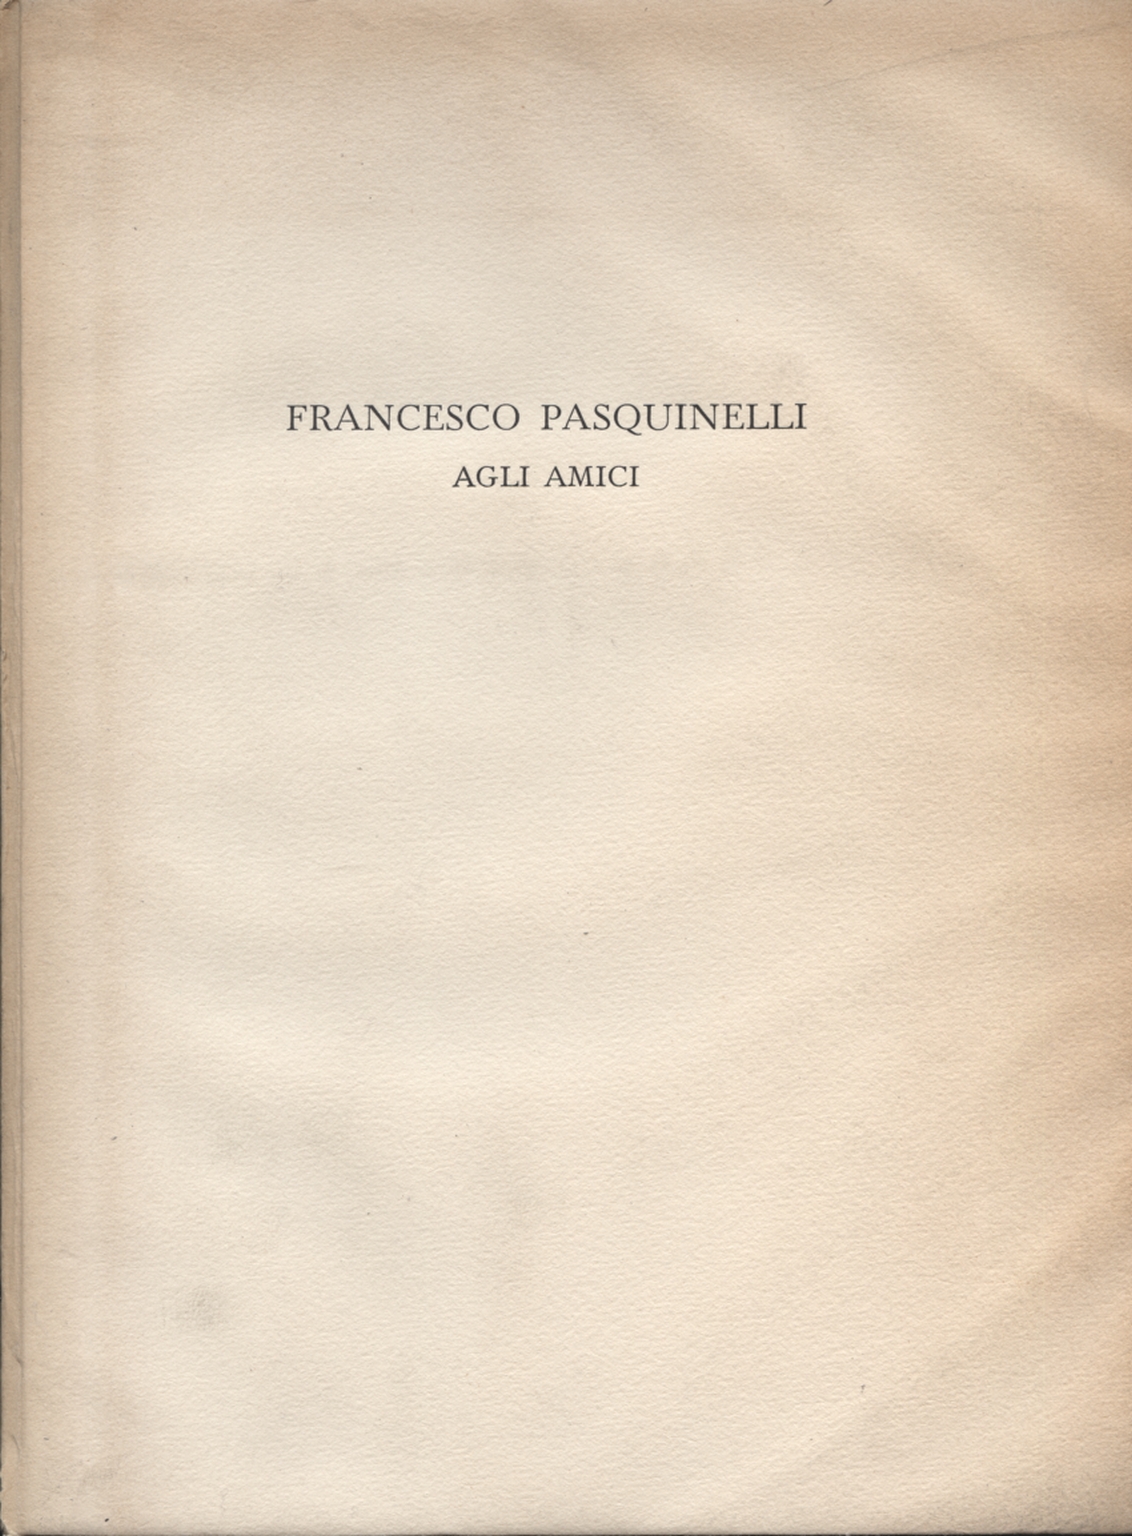 Francesco Pasquinelli amis, Francesco Pasquinelli